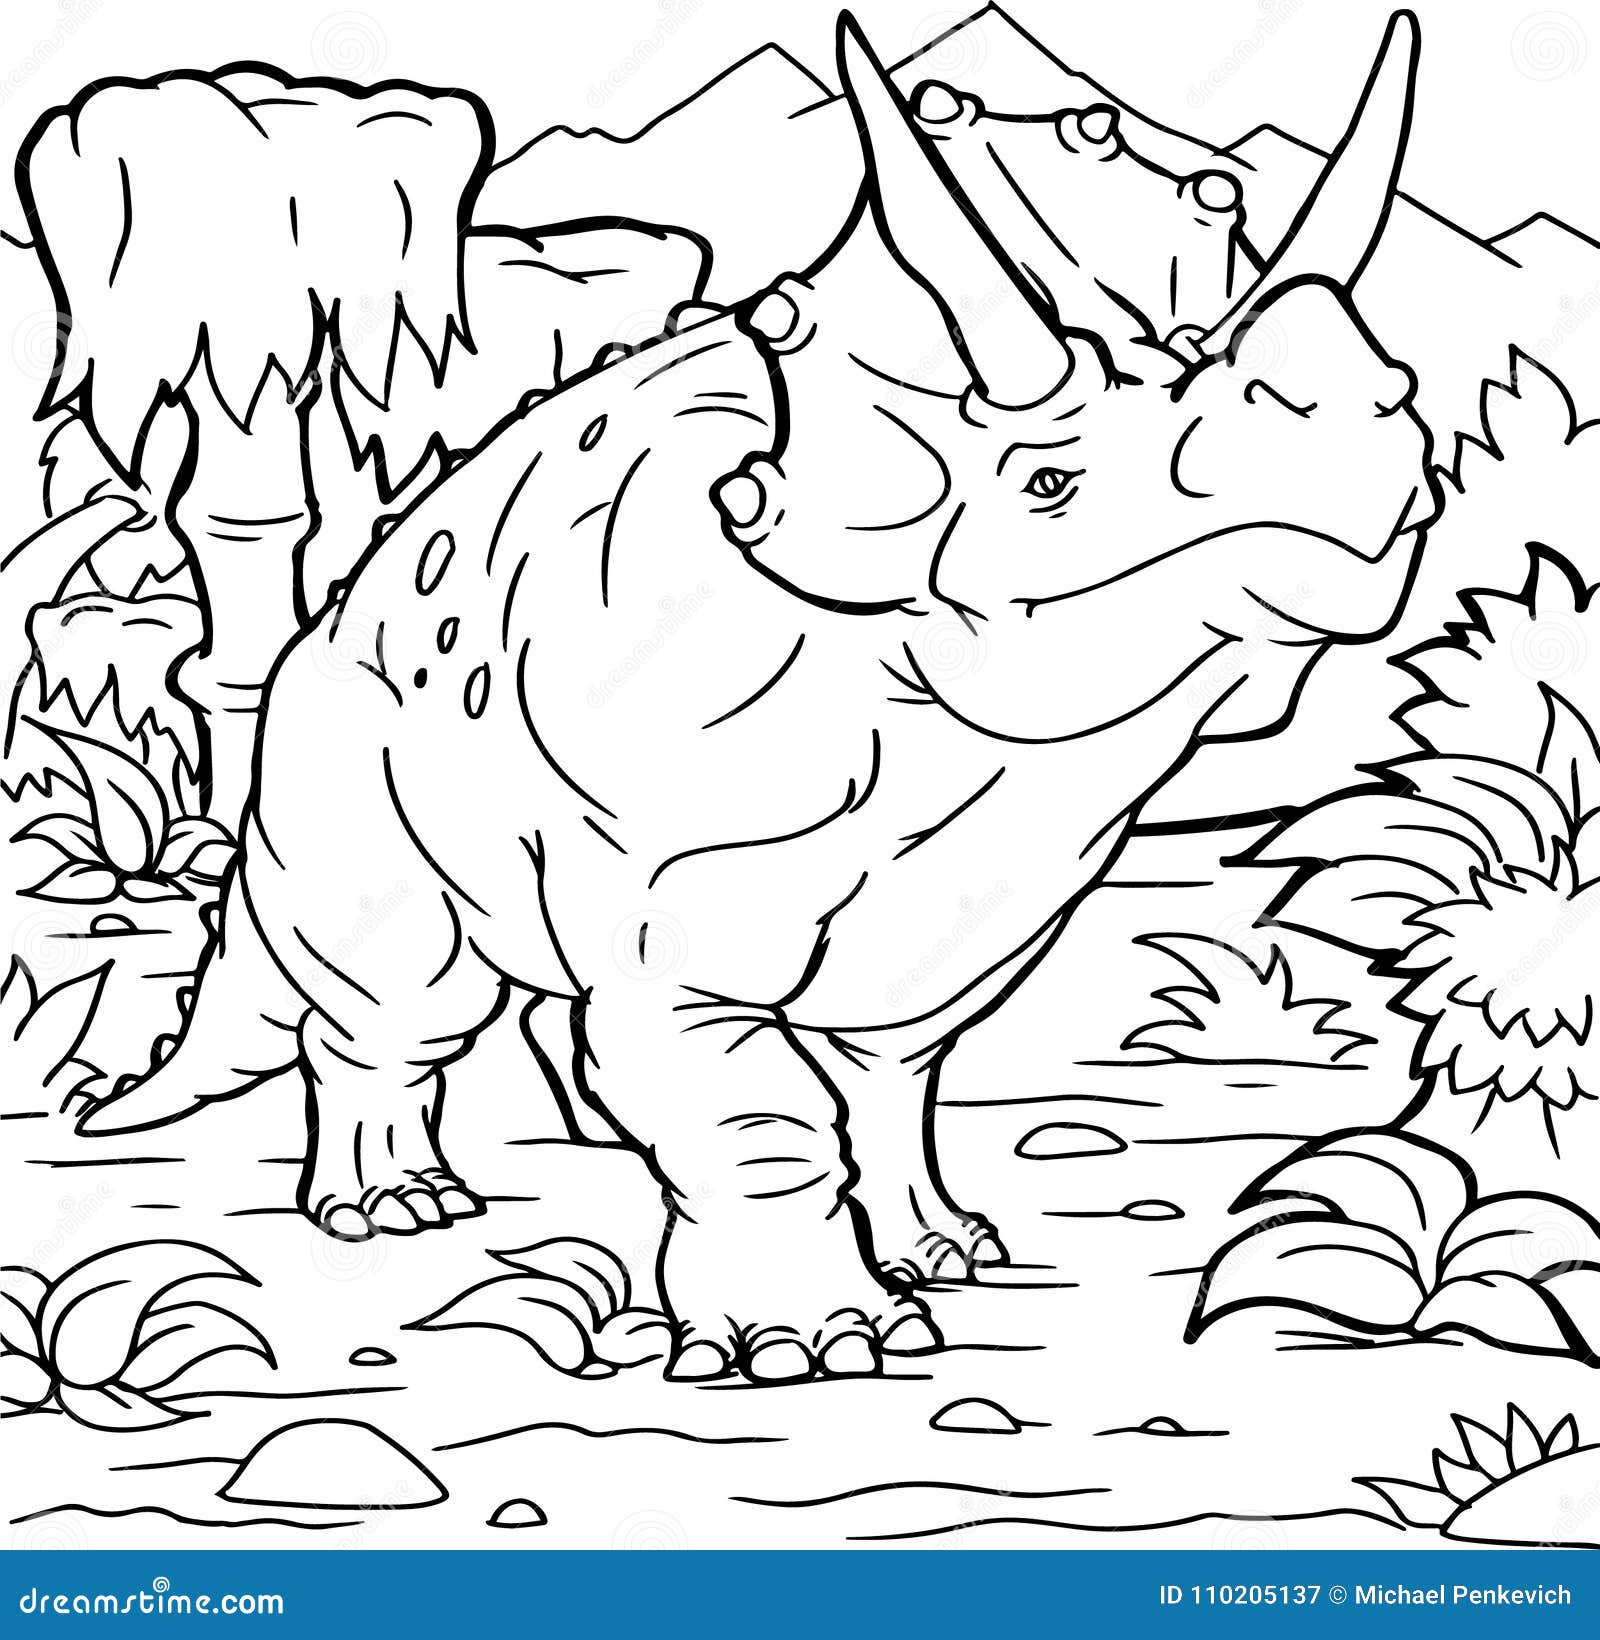 Dinossauro desenhado à mão janenschia robusta página do livro para colorir  antiestresse para adultos e crianças doodle pré-histórico animal dos  desenhos animados ilustração do esboço do esboço do vetor isolada no fundo